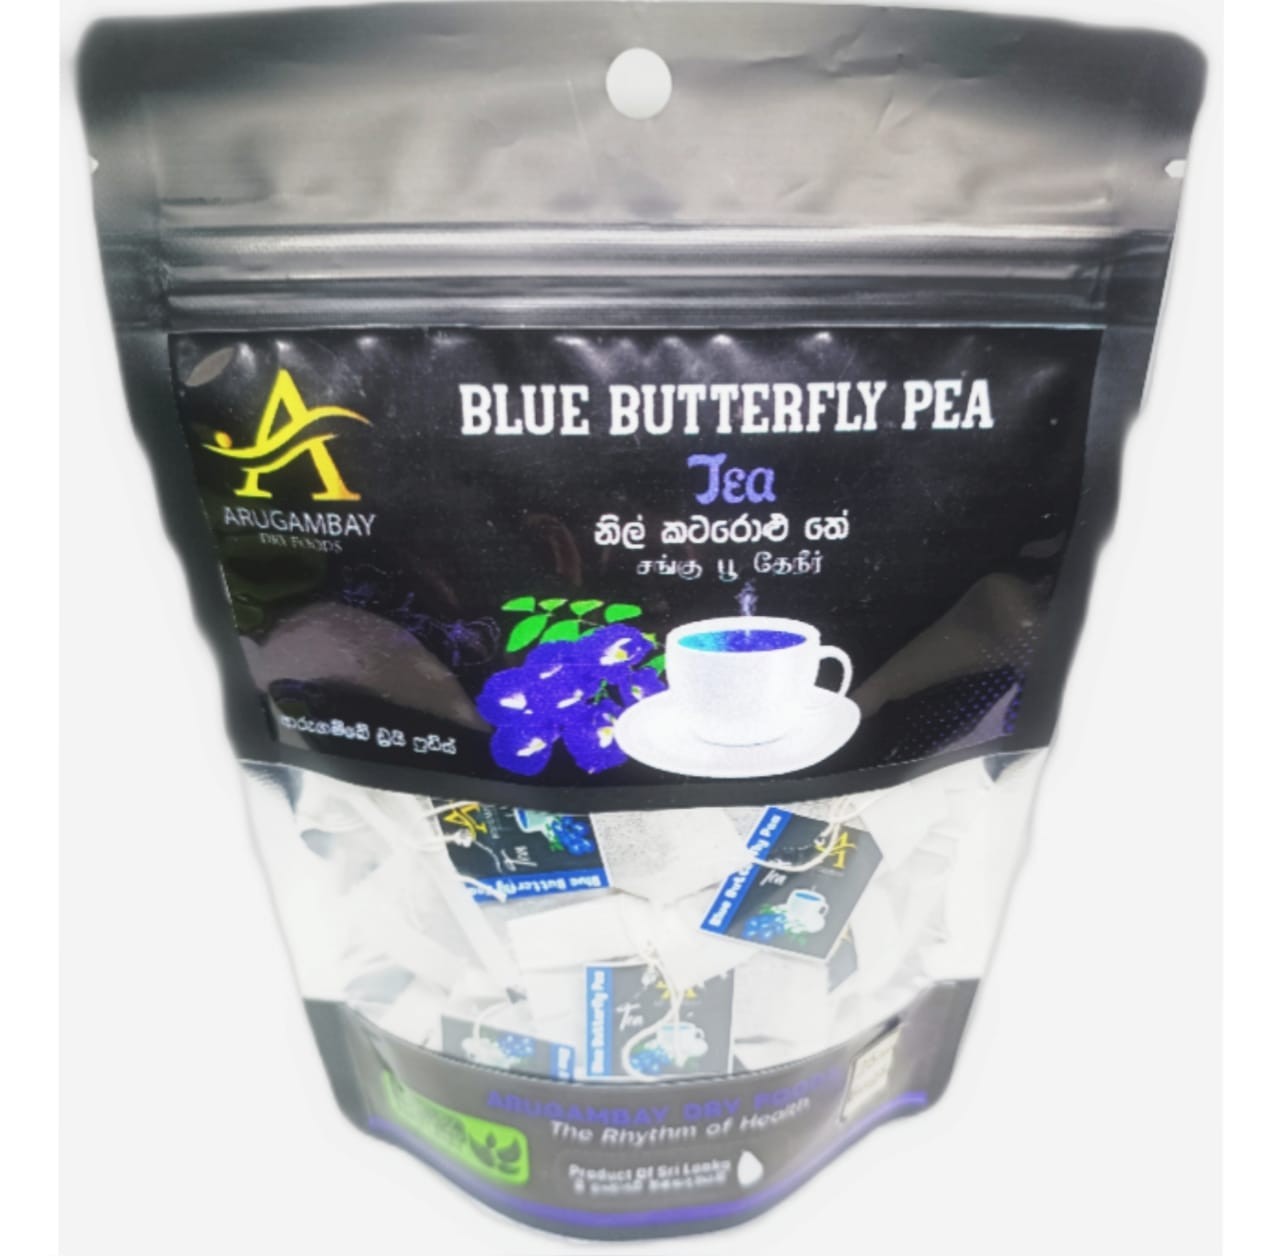 Blue butterfly pea flower tea